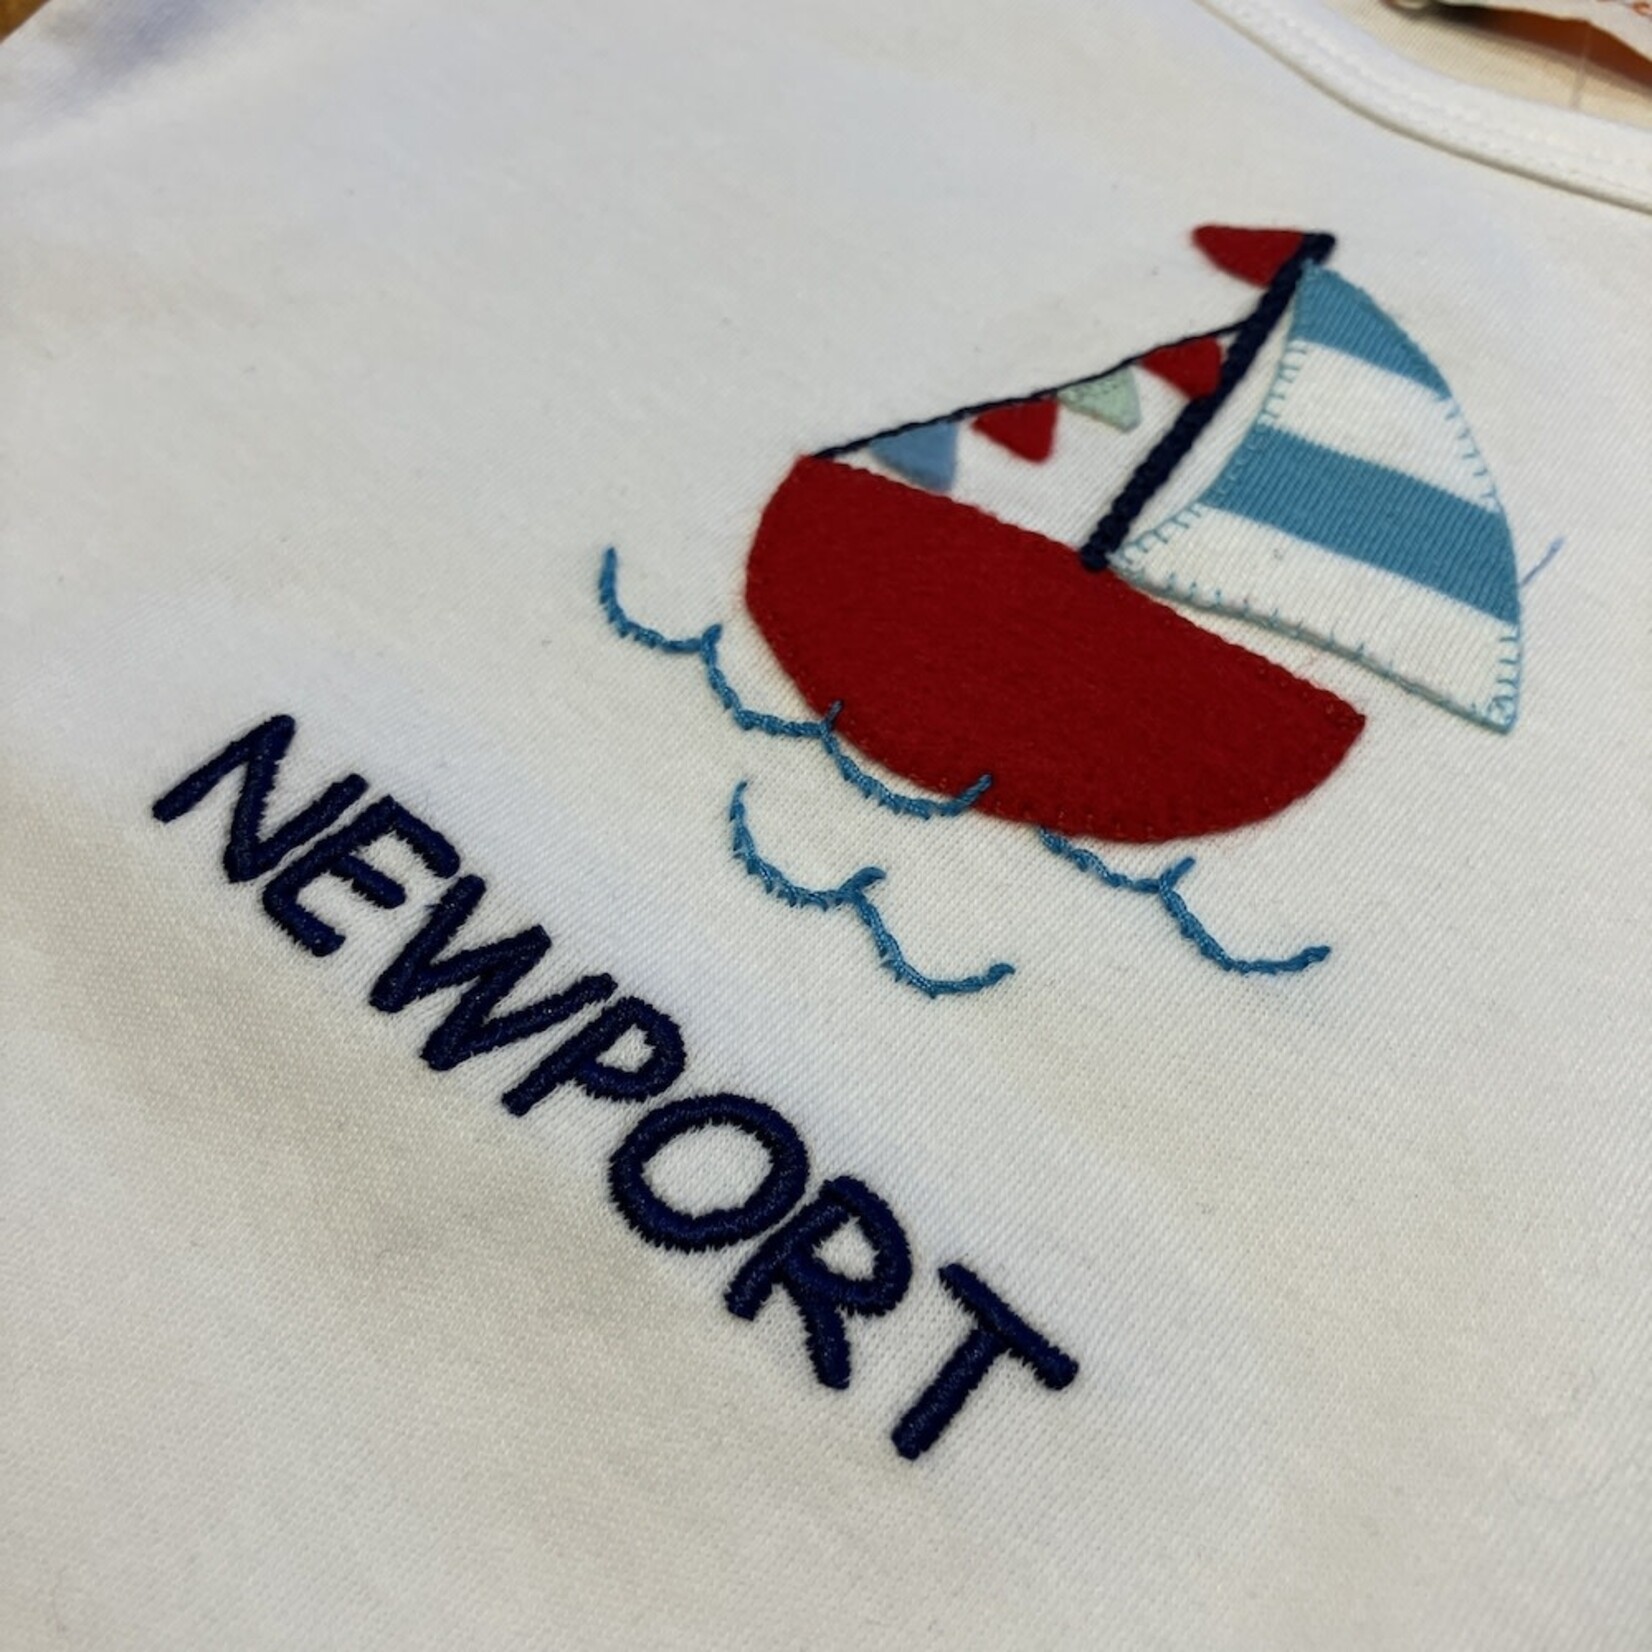 LULI & ME Newport Applique Boat T-Shirt